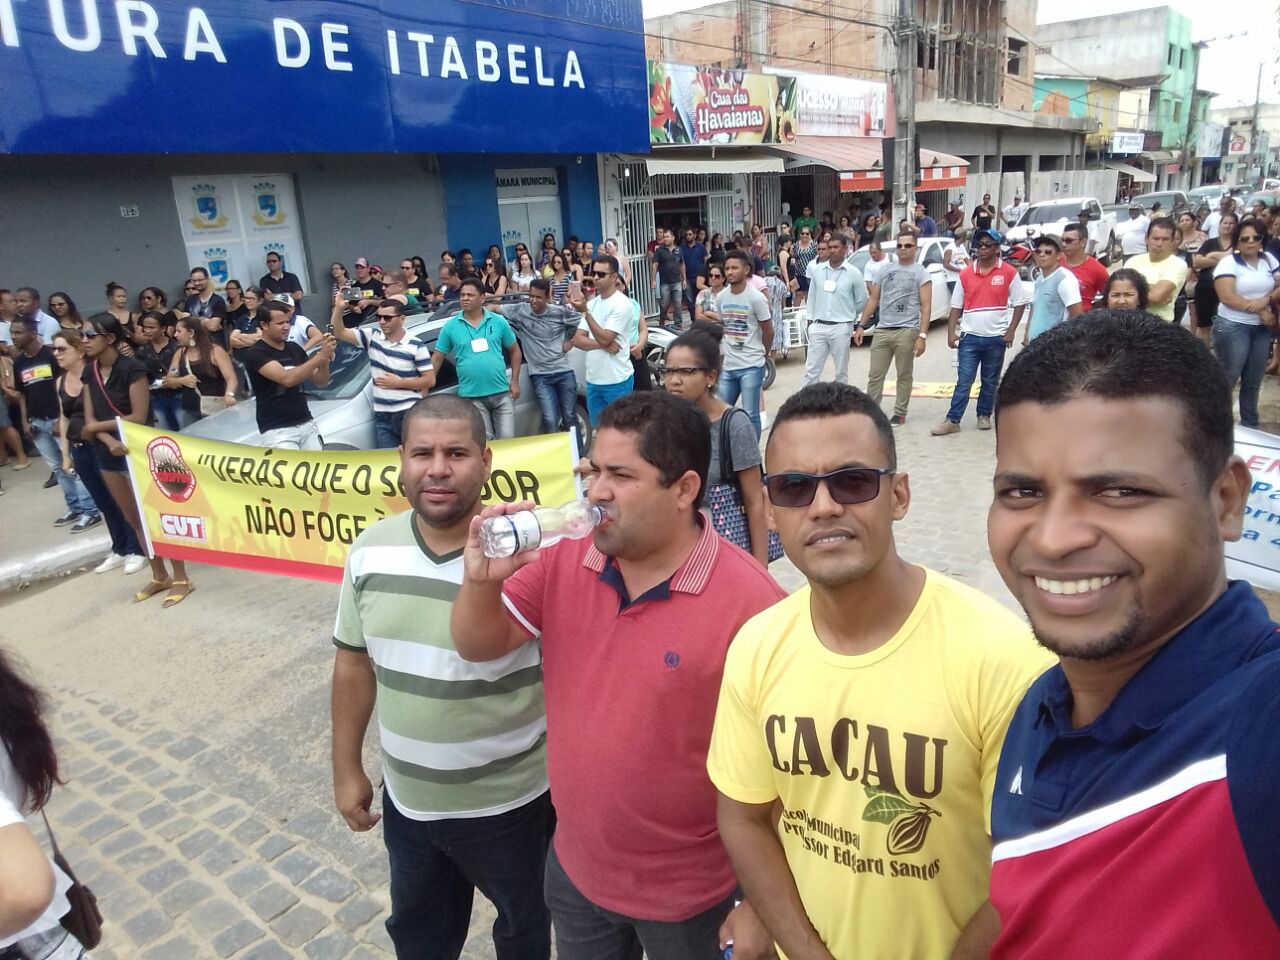 Representantes belmontenses participam de ato pelos precatórios do FUNDEF realizado em Itabela.